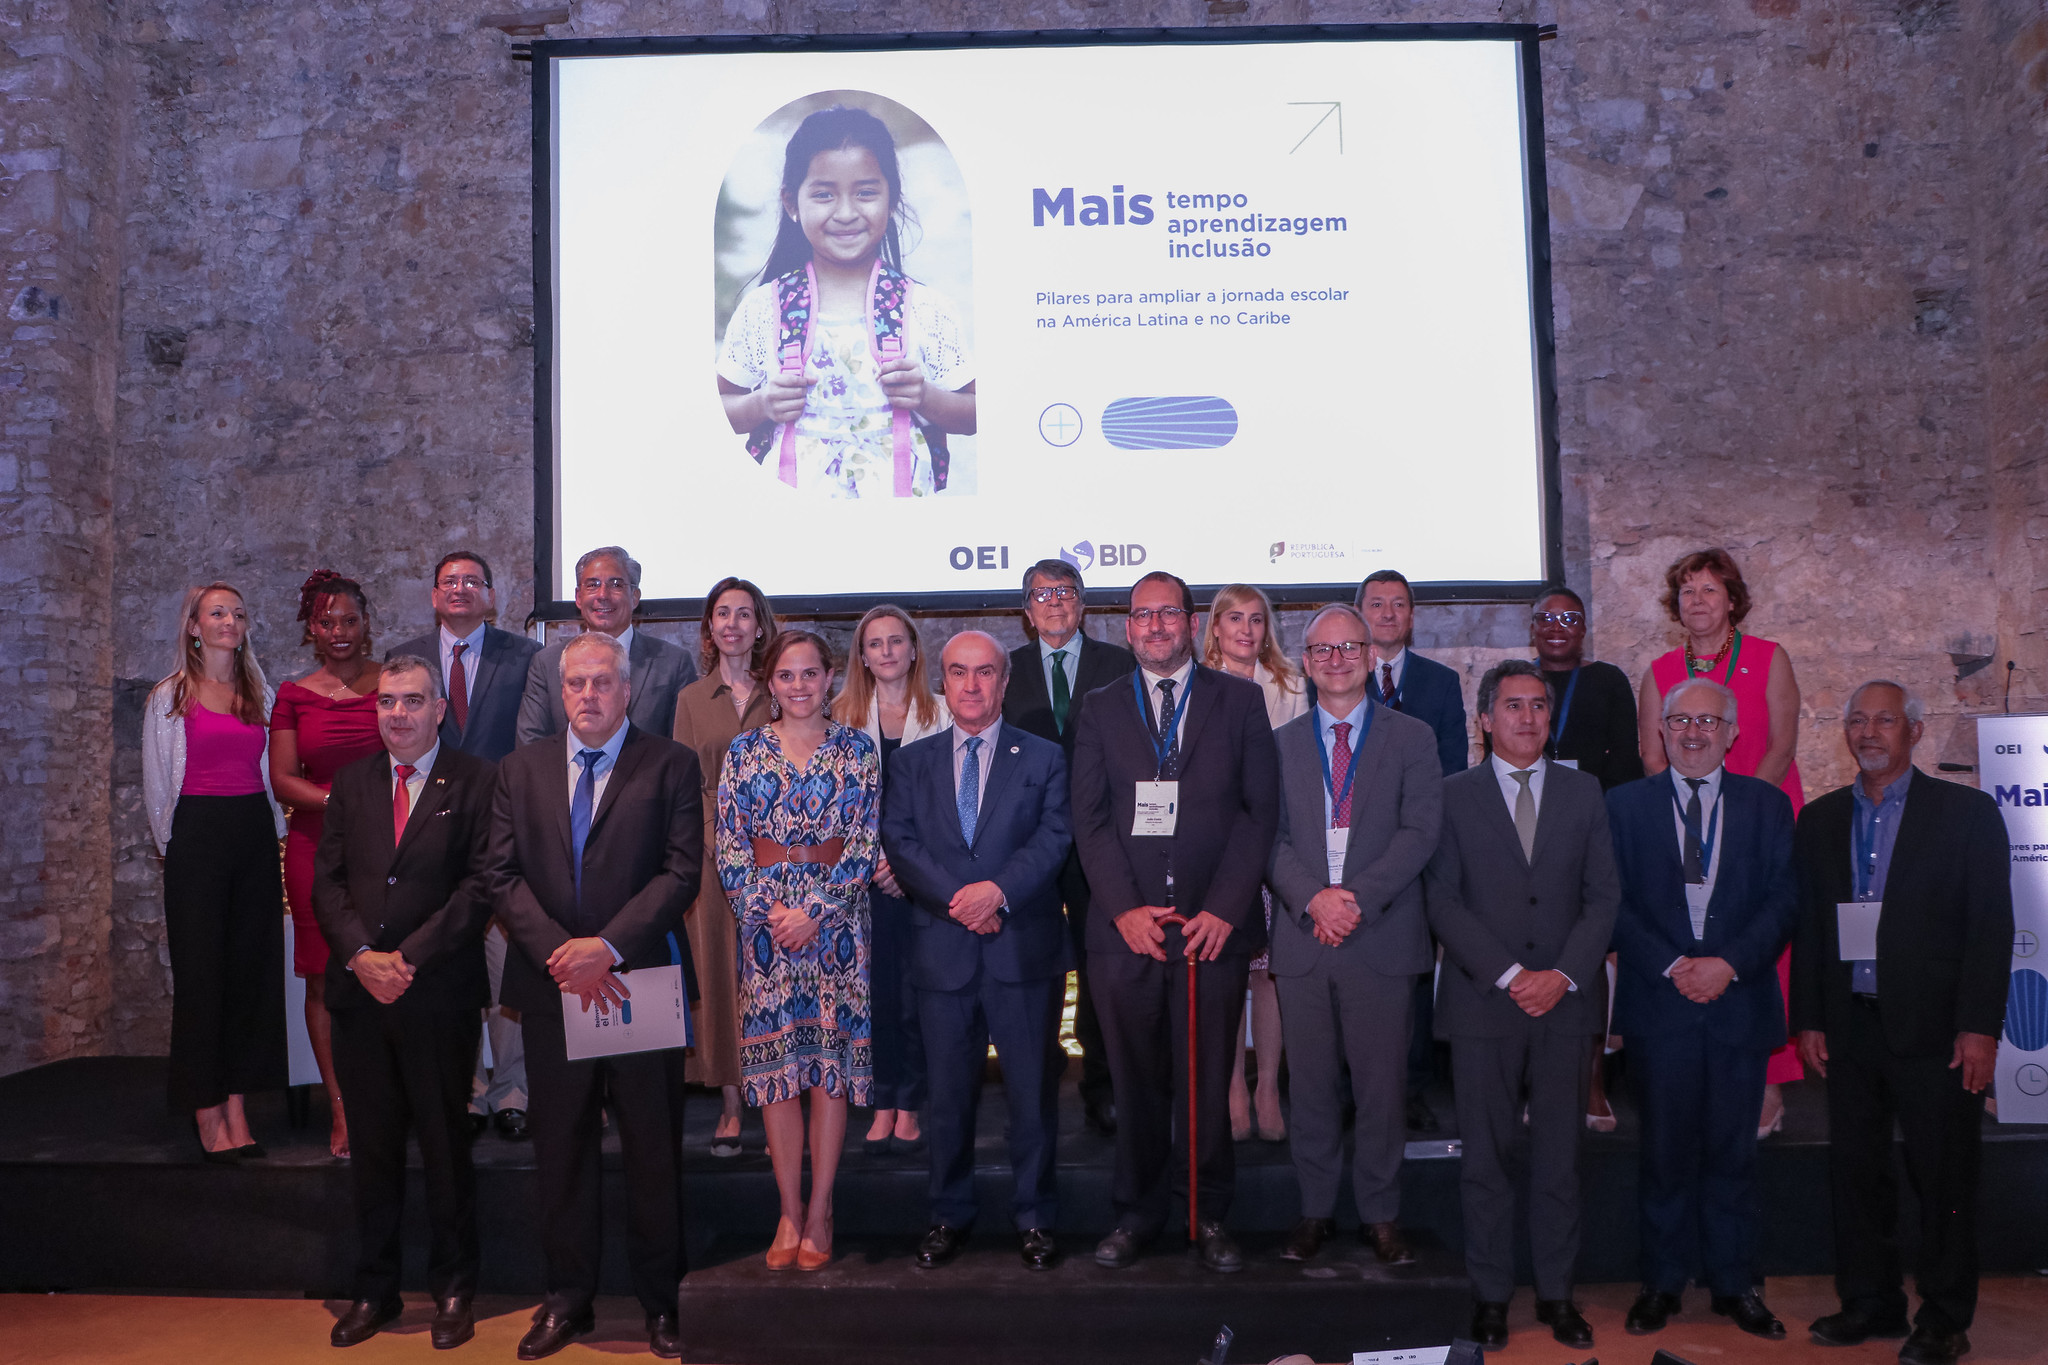 La OEI y el BID promueven en Lisboa el intercambio de modelos de jornada escolar extendida para América Latina y el Caribe